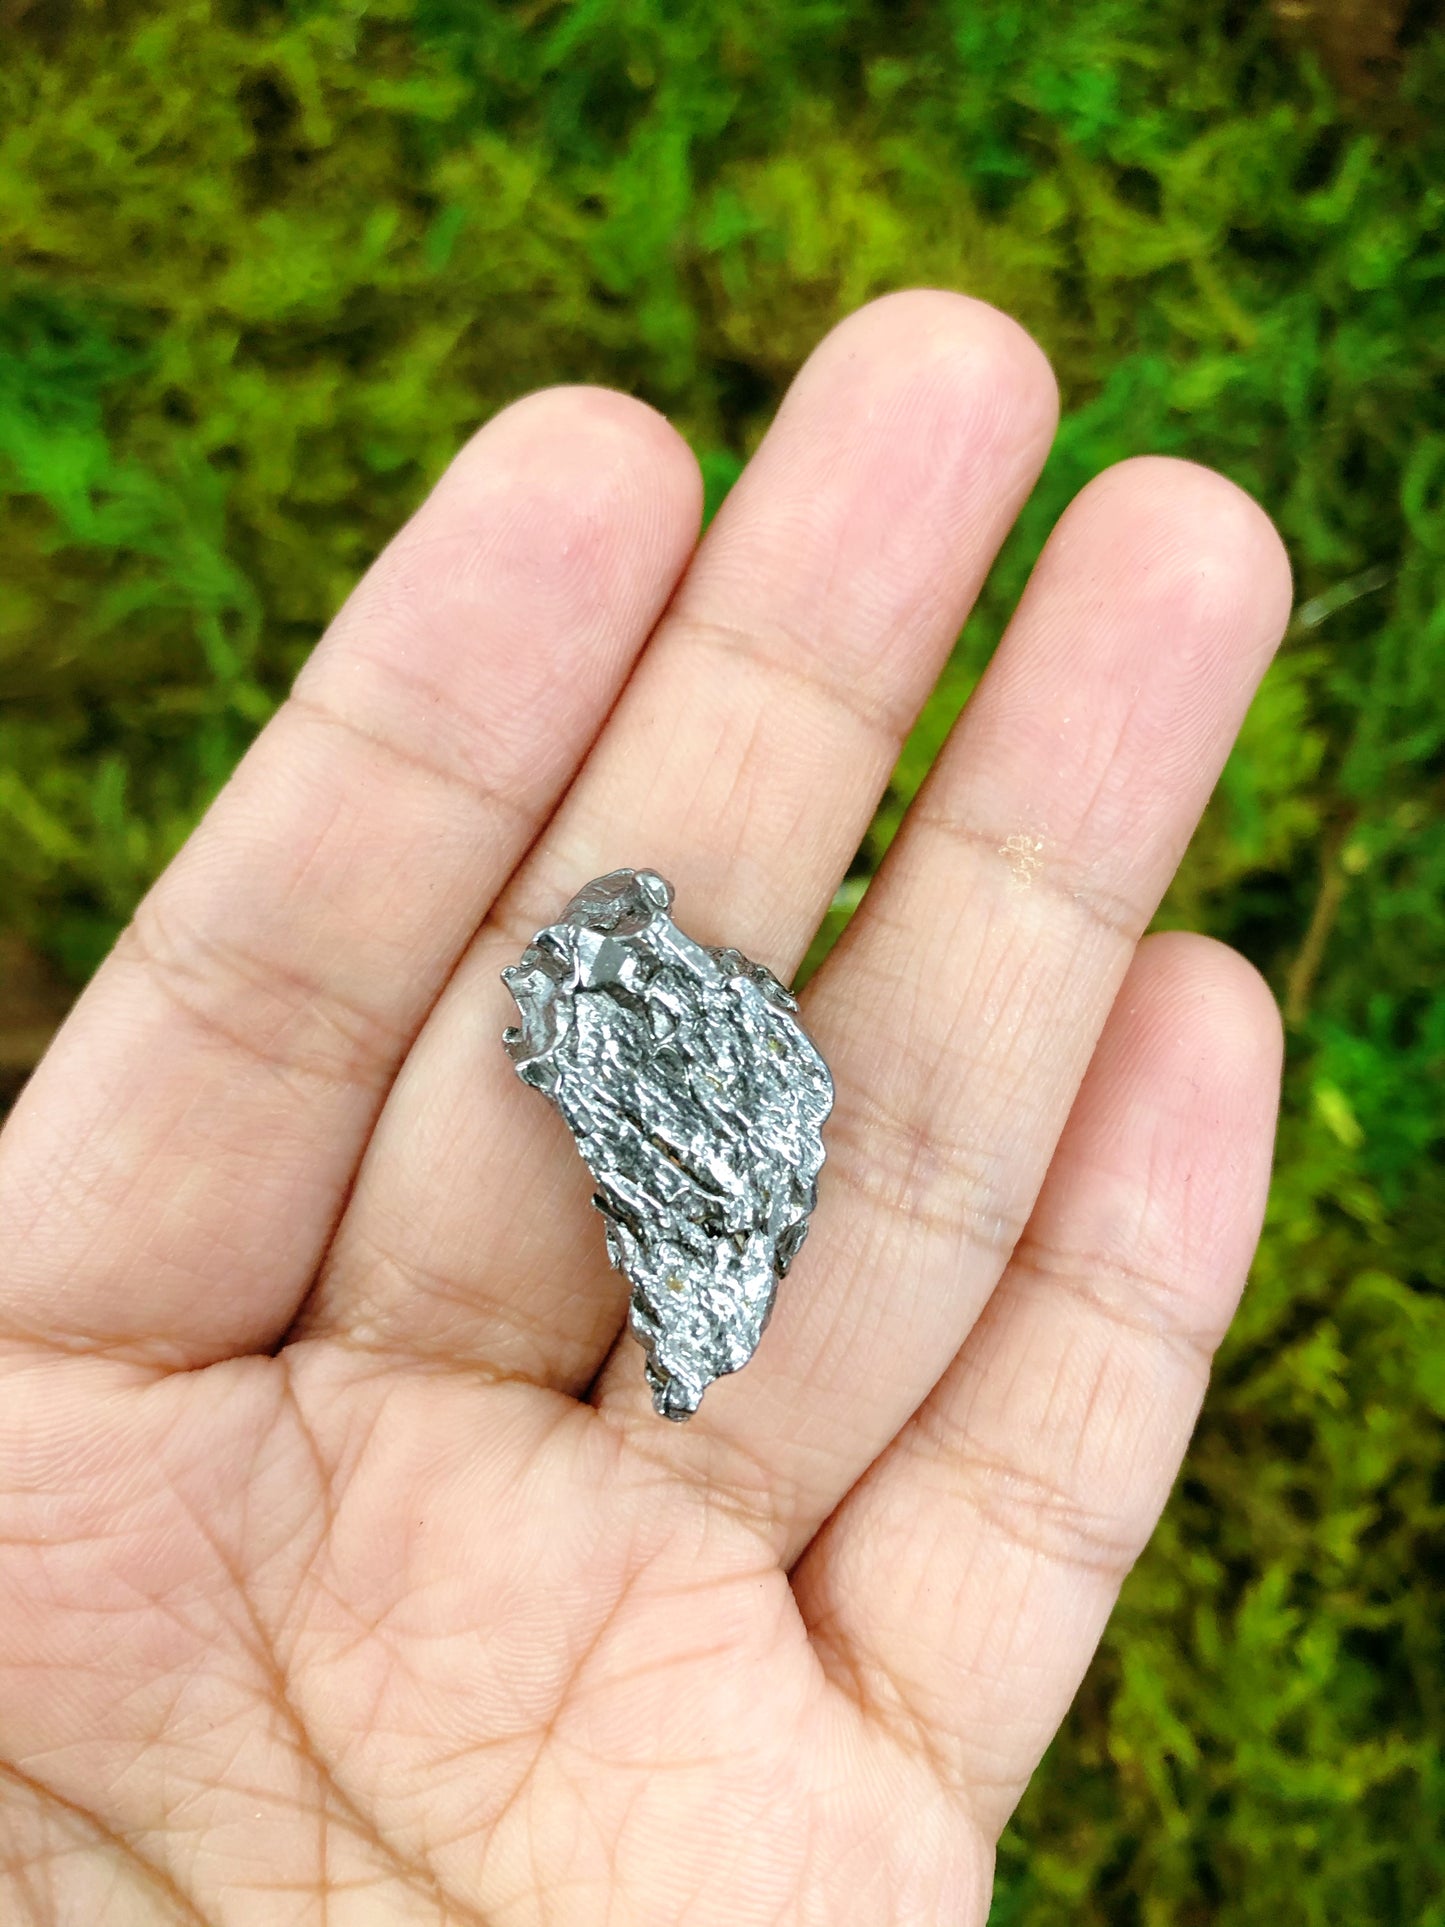 Meteorite 10g Piece